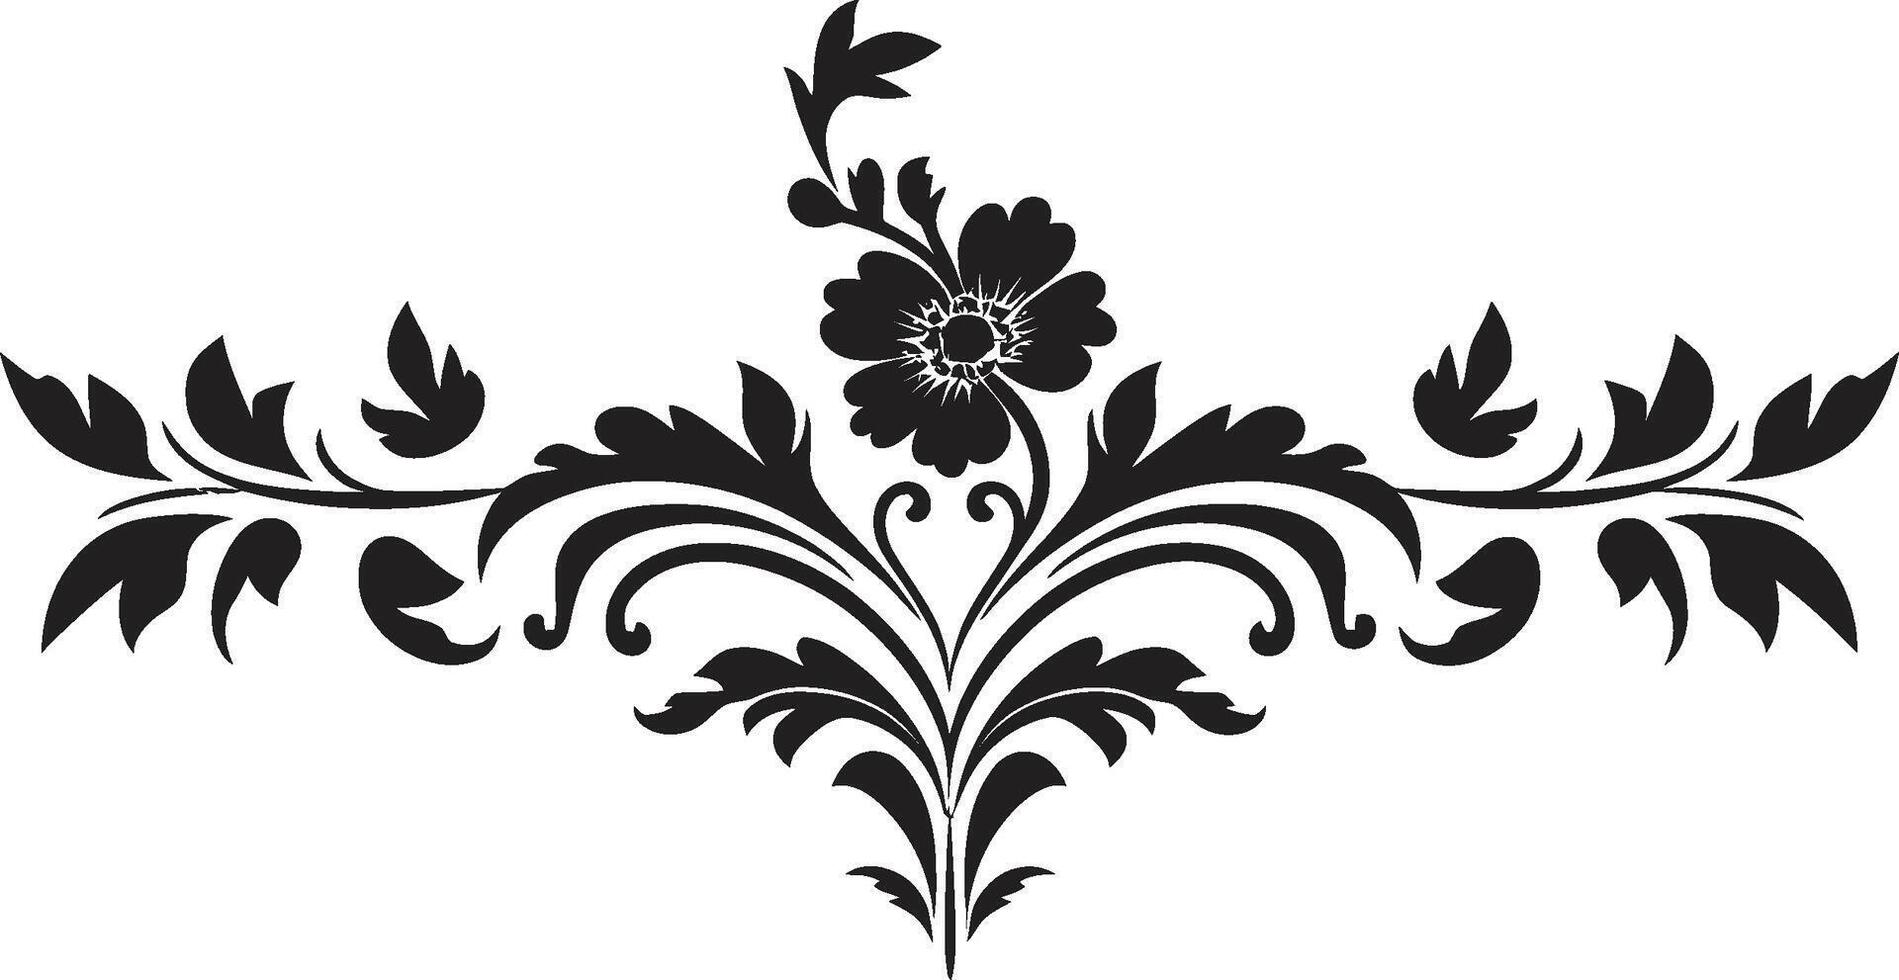 Aged Allure Sleek Emblem with Black European Border Design Heritage Hues Vintage European Border Logo in Elegant Black vector